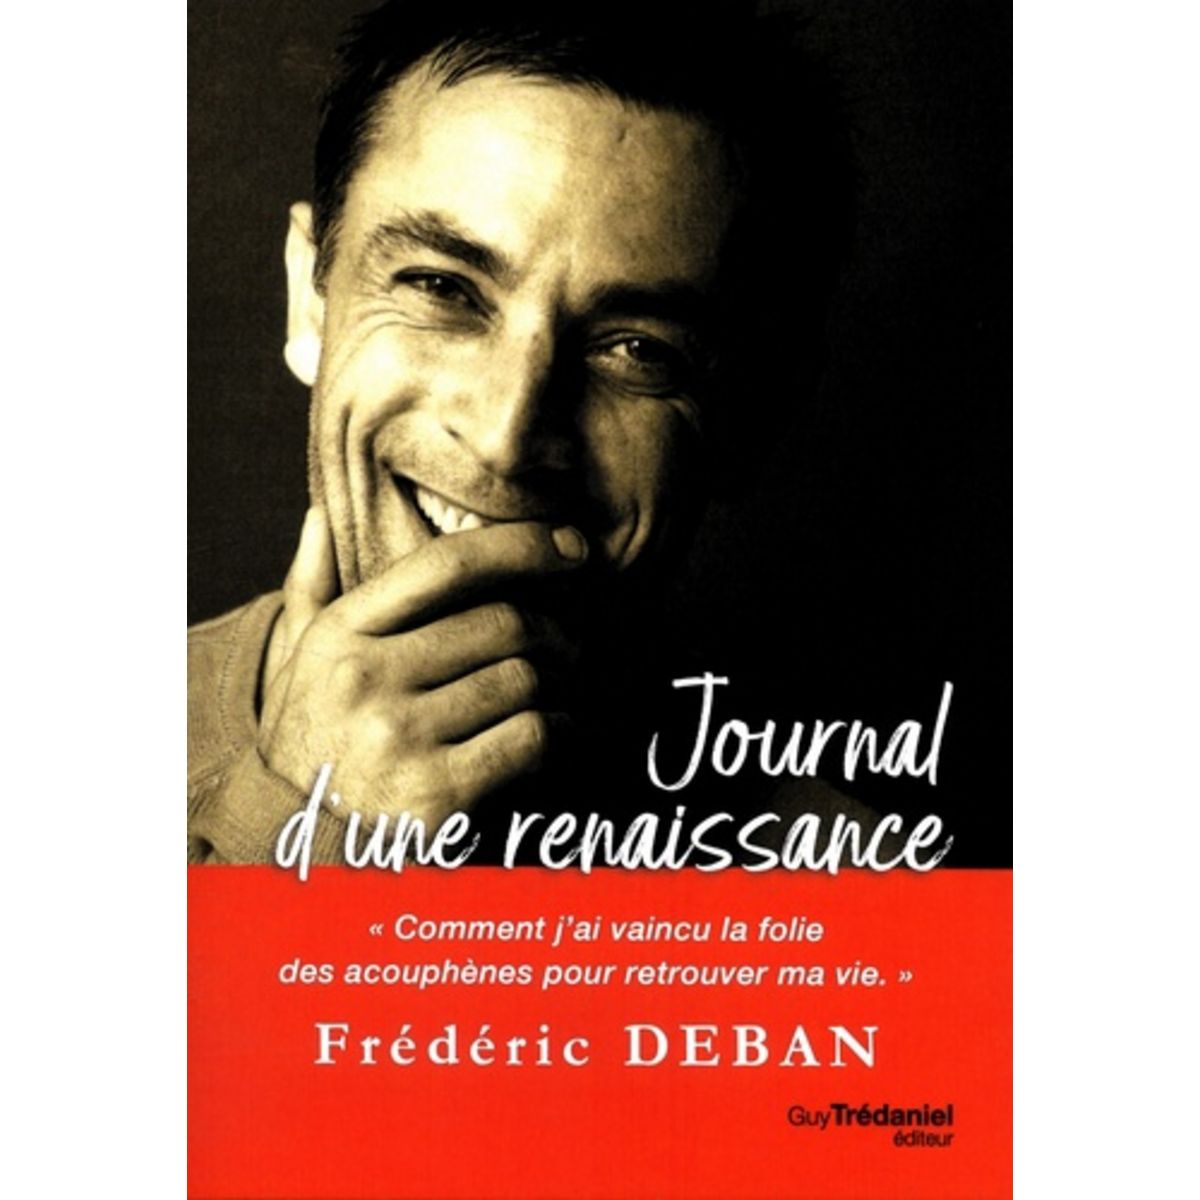  JOURNAL D'UNE RENAISSANCE. COMMENT J'AI VAINCU LA FOLIE DES ACOUPHENES POUR RETROUVER MA VIE, Deban Frédéric